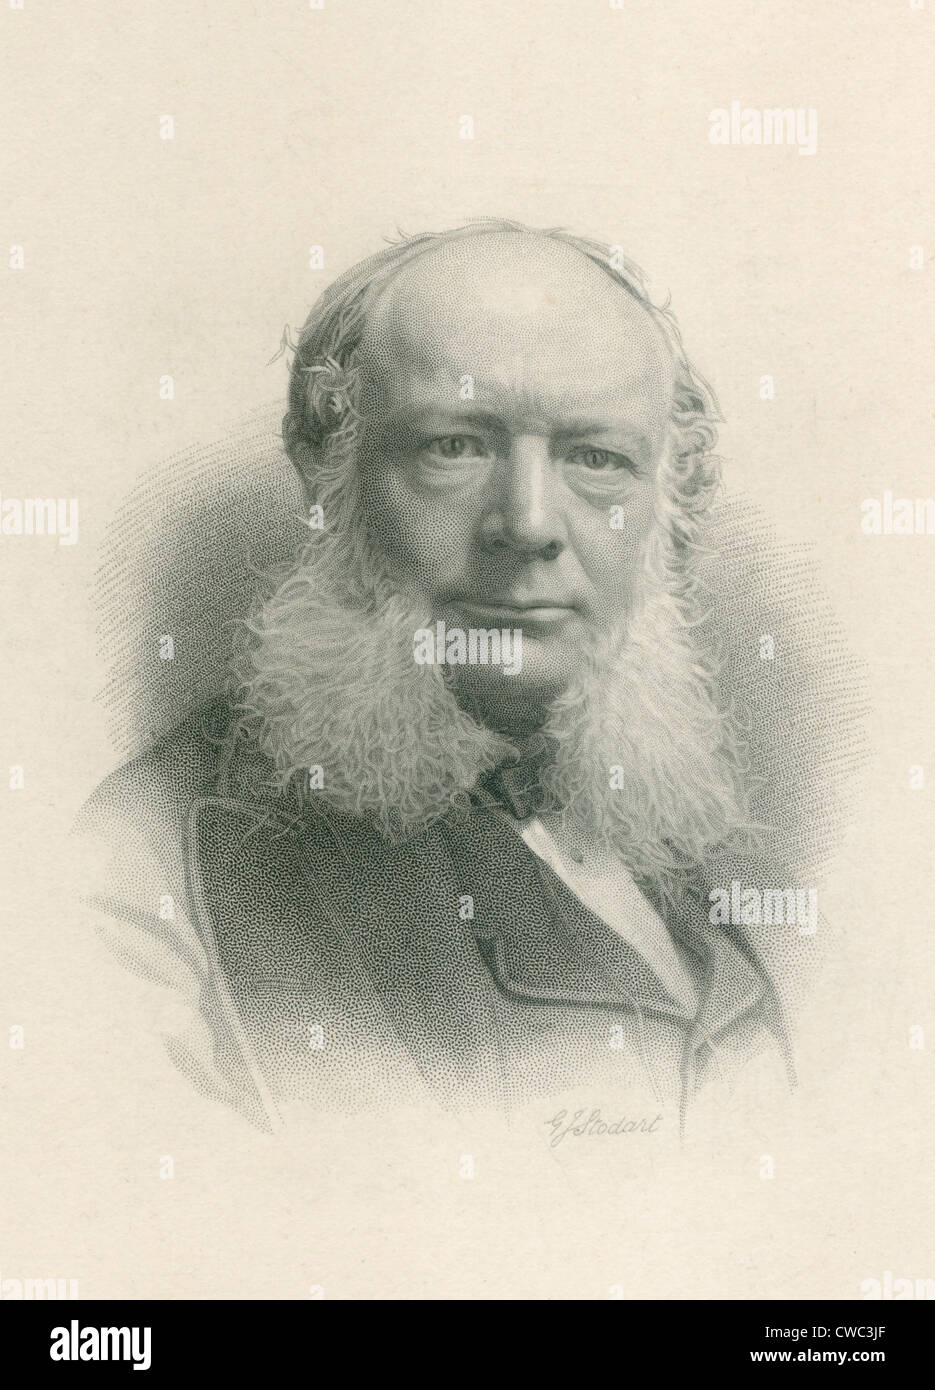 William Siemens 1823-1883 fratello minore di Werner stabilito 'Siemens Halske Co.' a Londra nel 1858 e gestito il Foto Stock